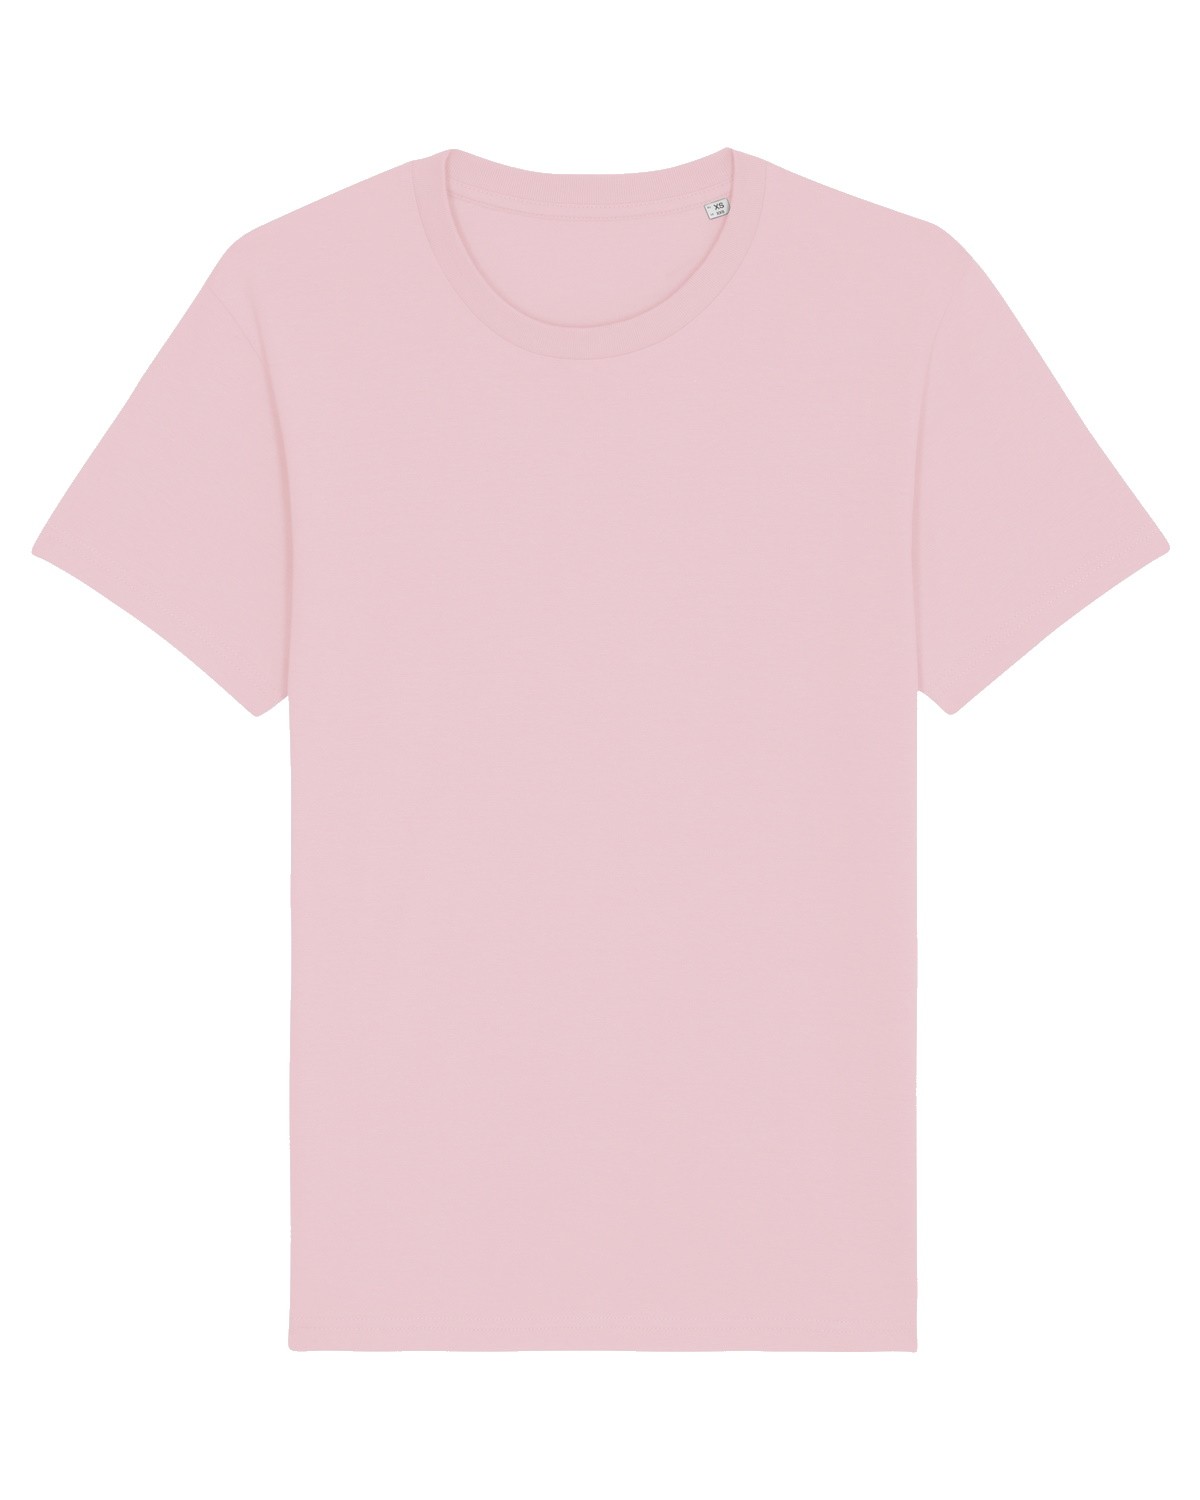 Camiseta Personalizada Mujer Color Rosa